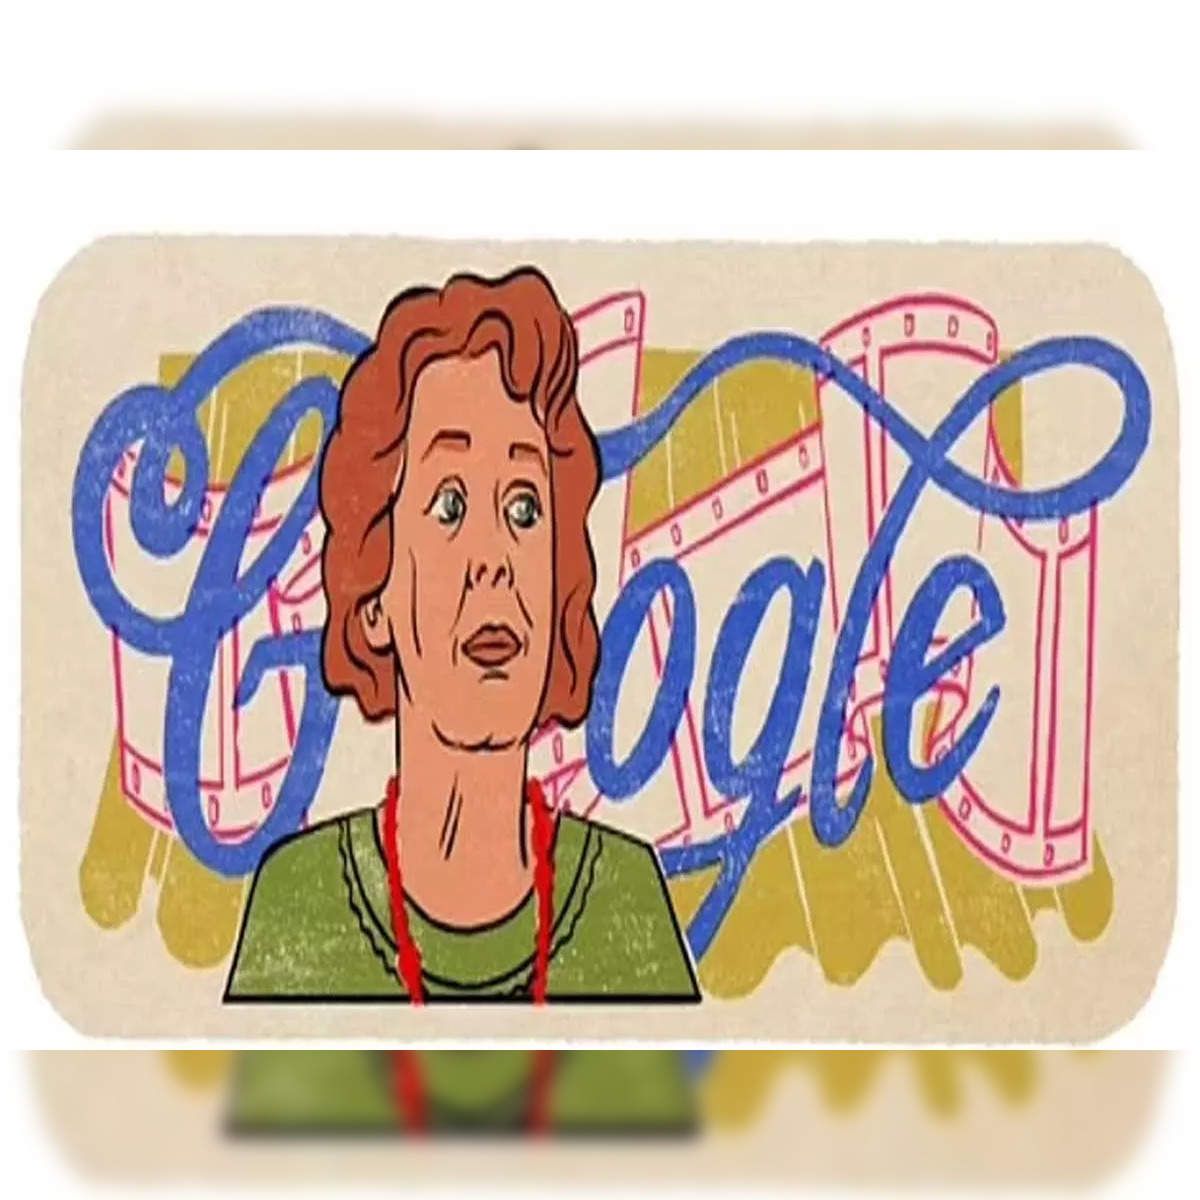 Google Doodle: Renate Krößner honoured on 78th birthday